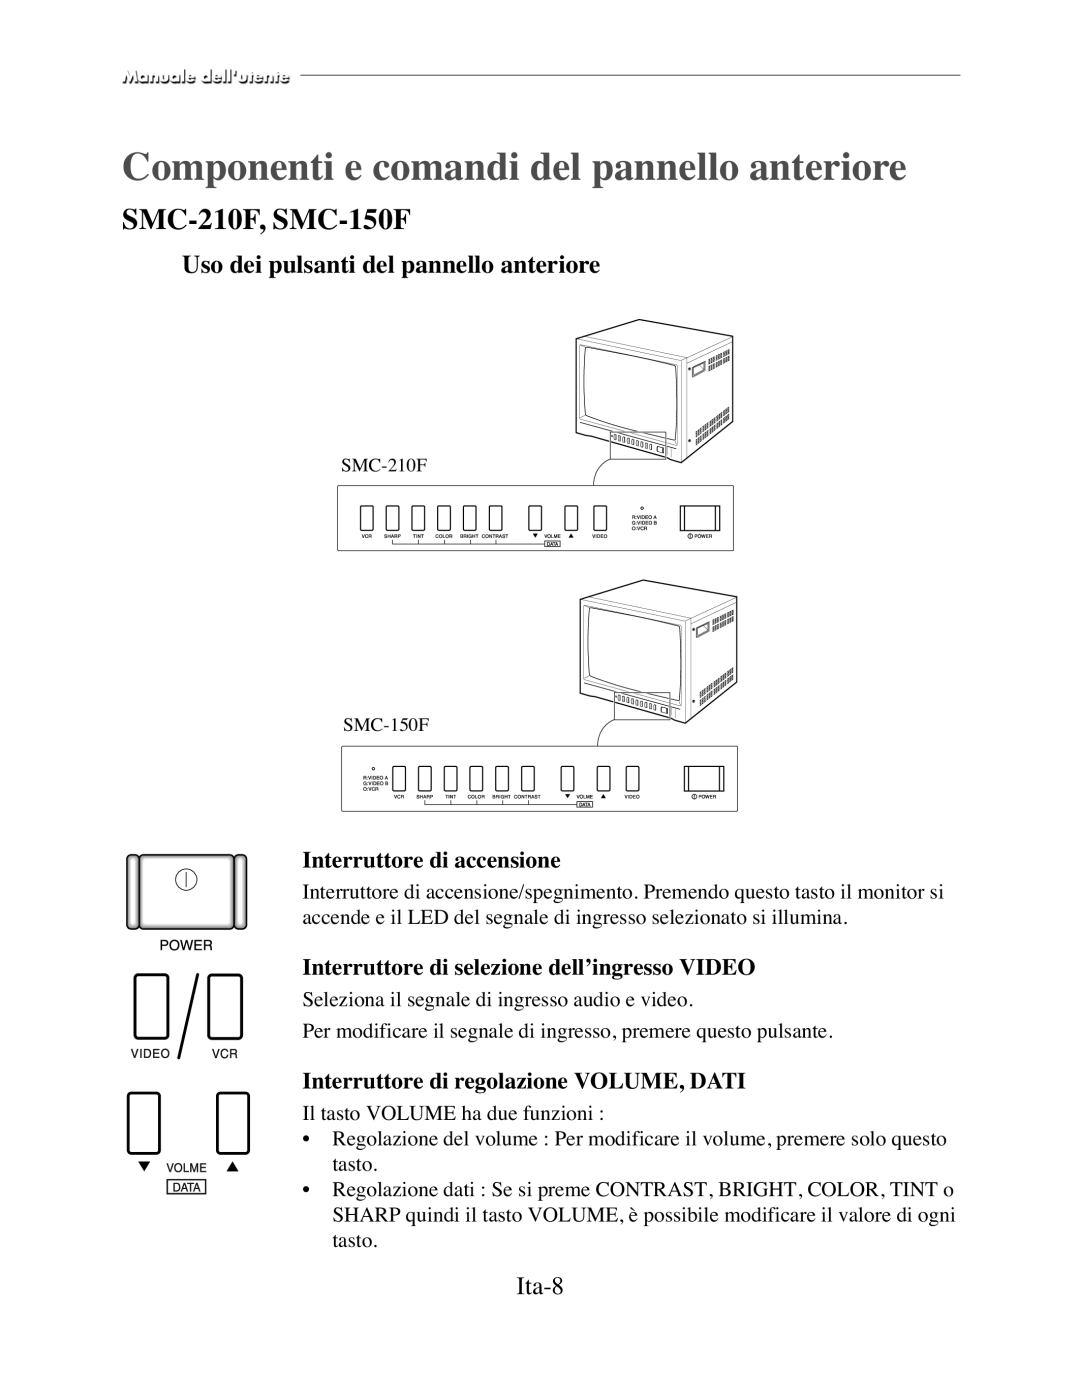 Samsung SMC-210FPV, SMC-152FP Componenti e comandi del pannello anteriore, Uso dei pulsanti del pannello anteriore, Ita-8 